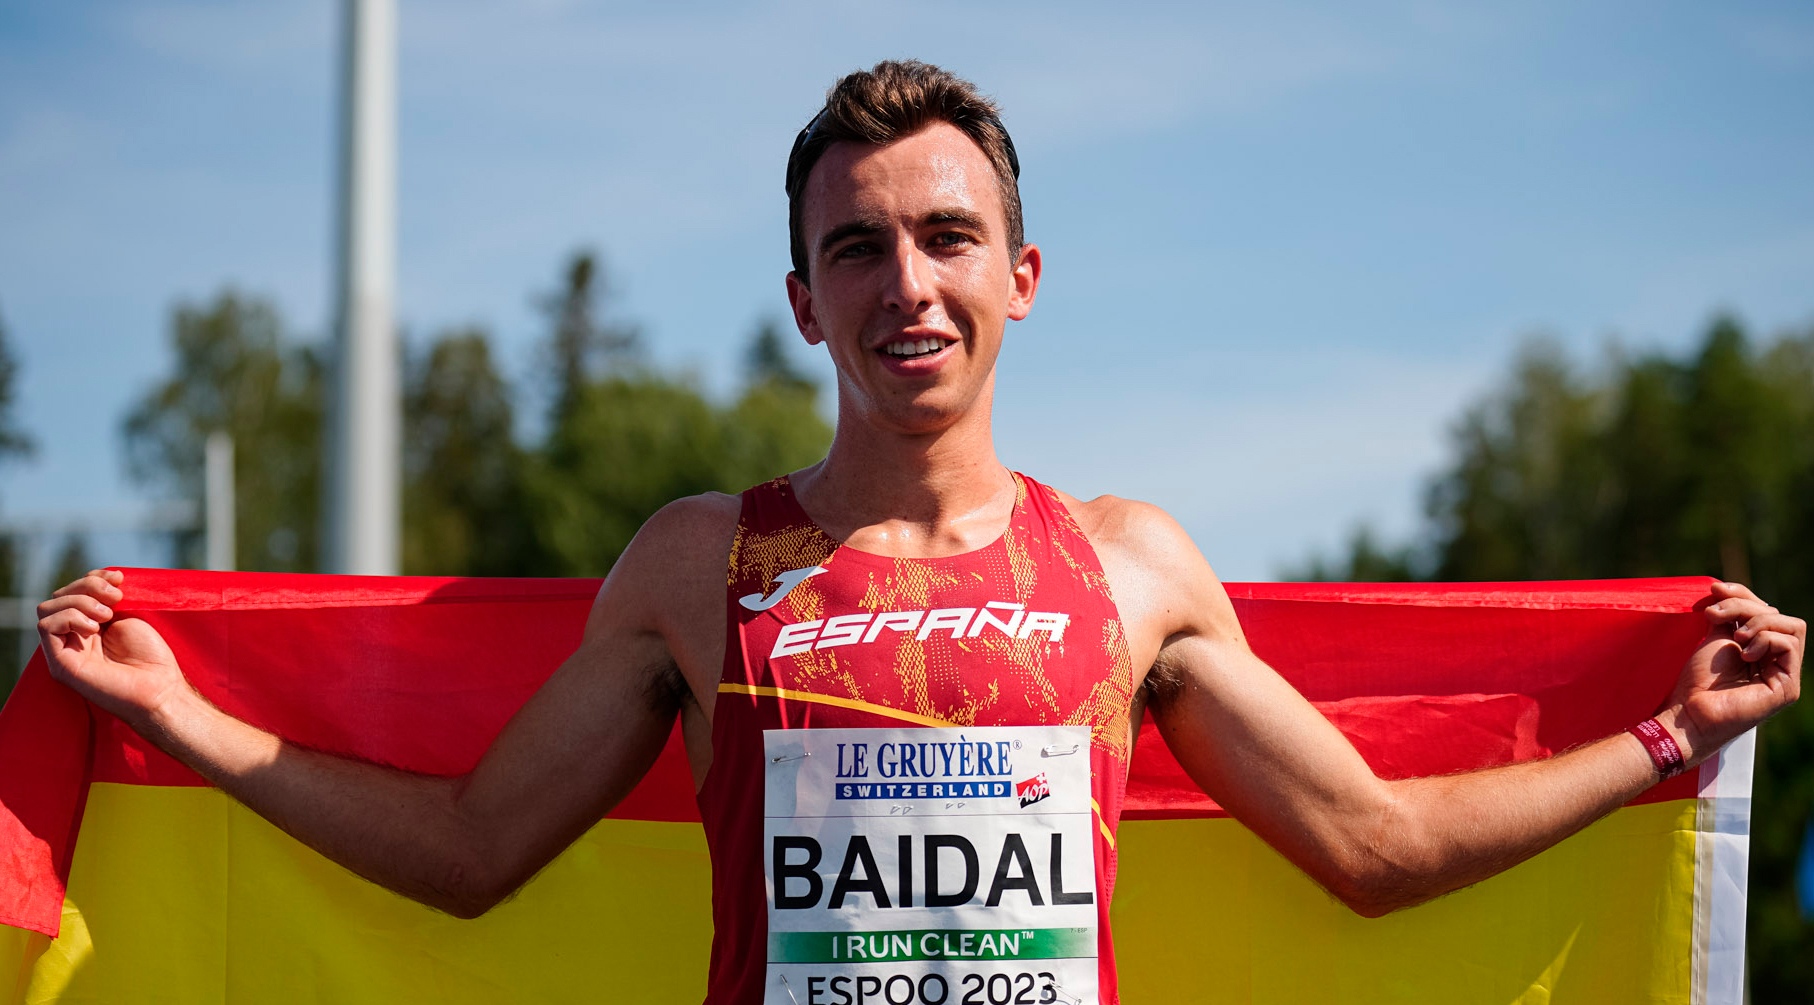 Miguel Baidal